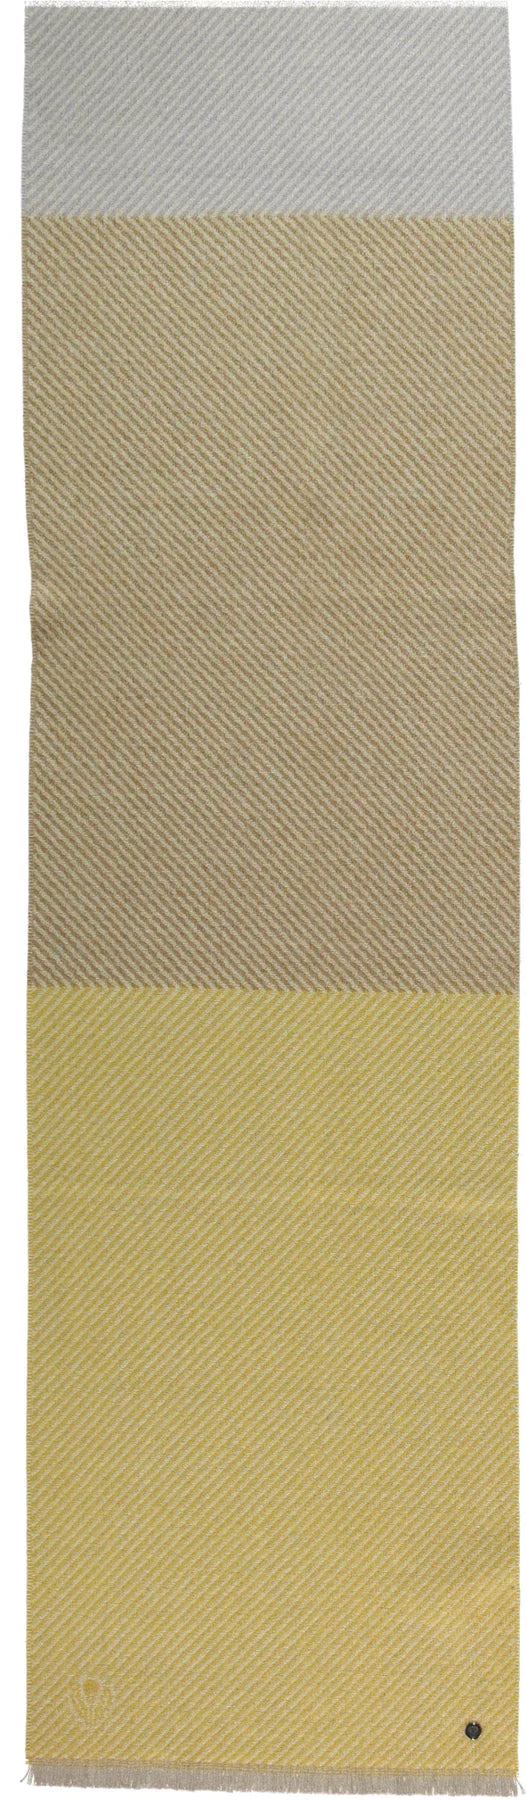 VF648000 Diagonal Twill Wool Scarf